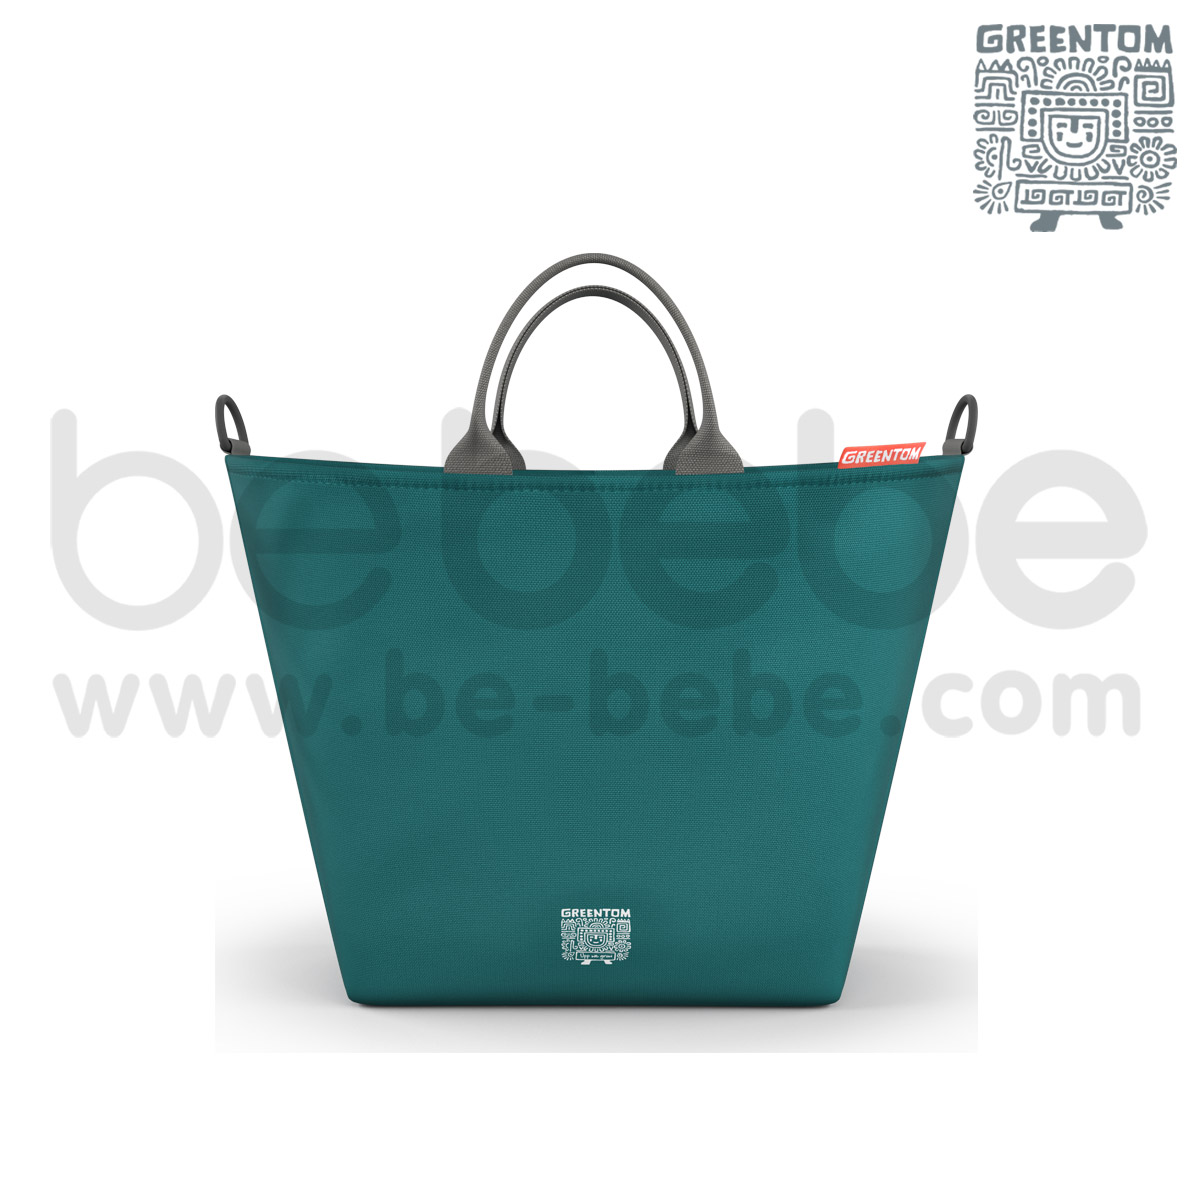 Greentom : Shopping Bag / Teal